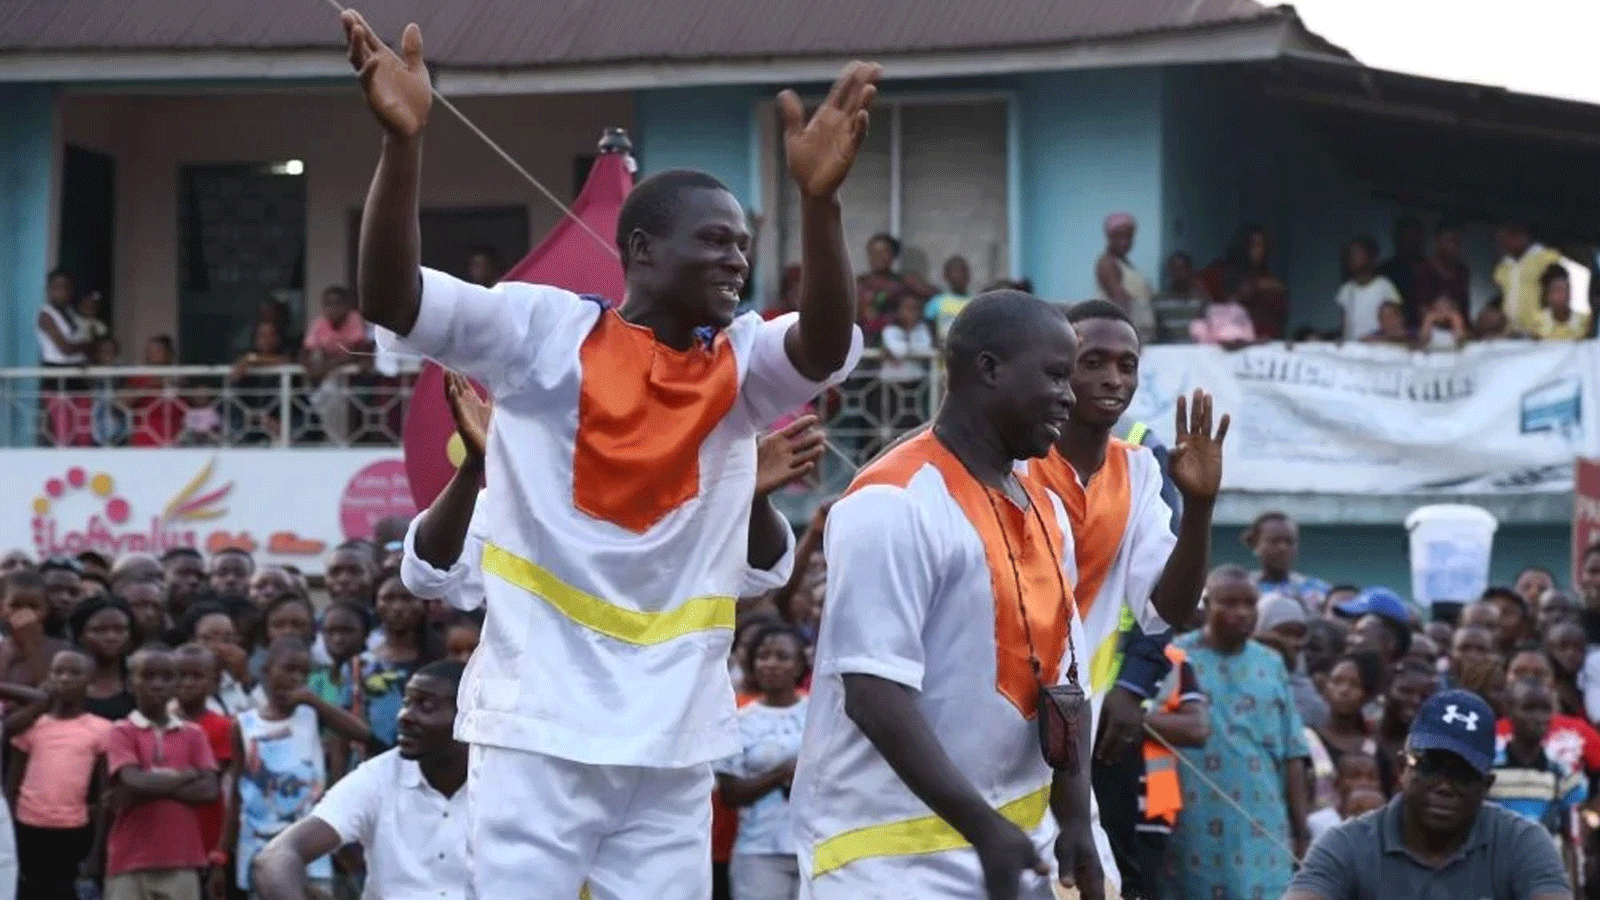 لقطة من احتفال في كرنفال كالابار ، الذي يشتهر بكونه أكبر حفلة شوارع في أفريقيا(الأناضول)